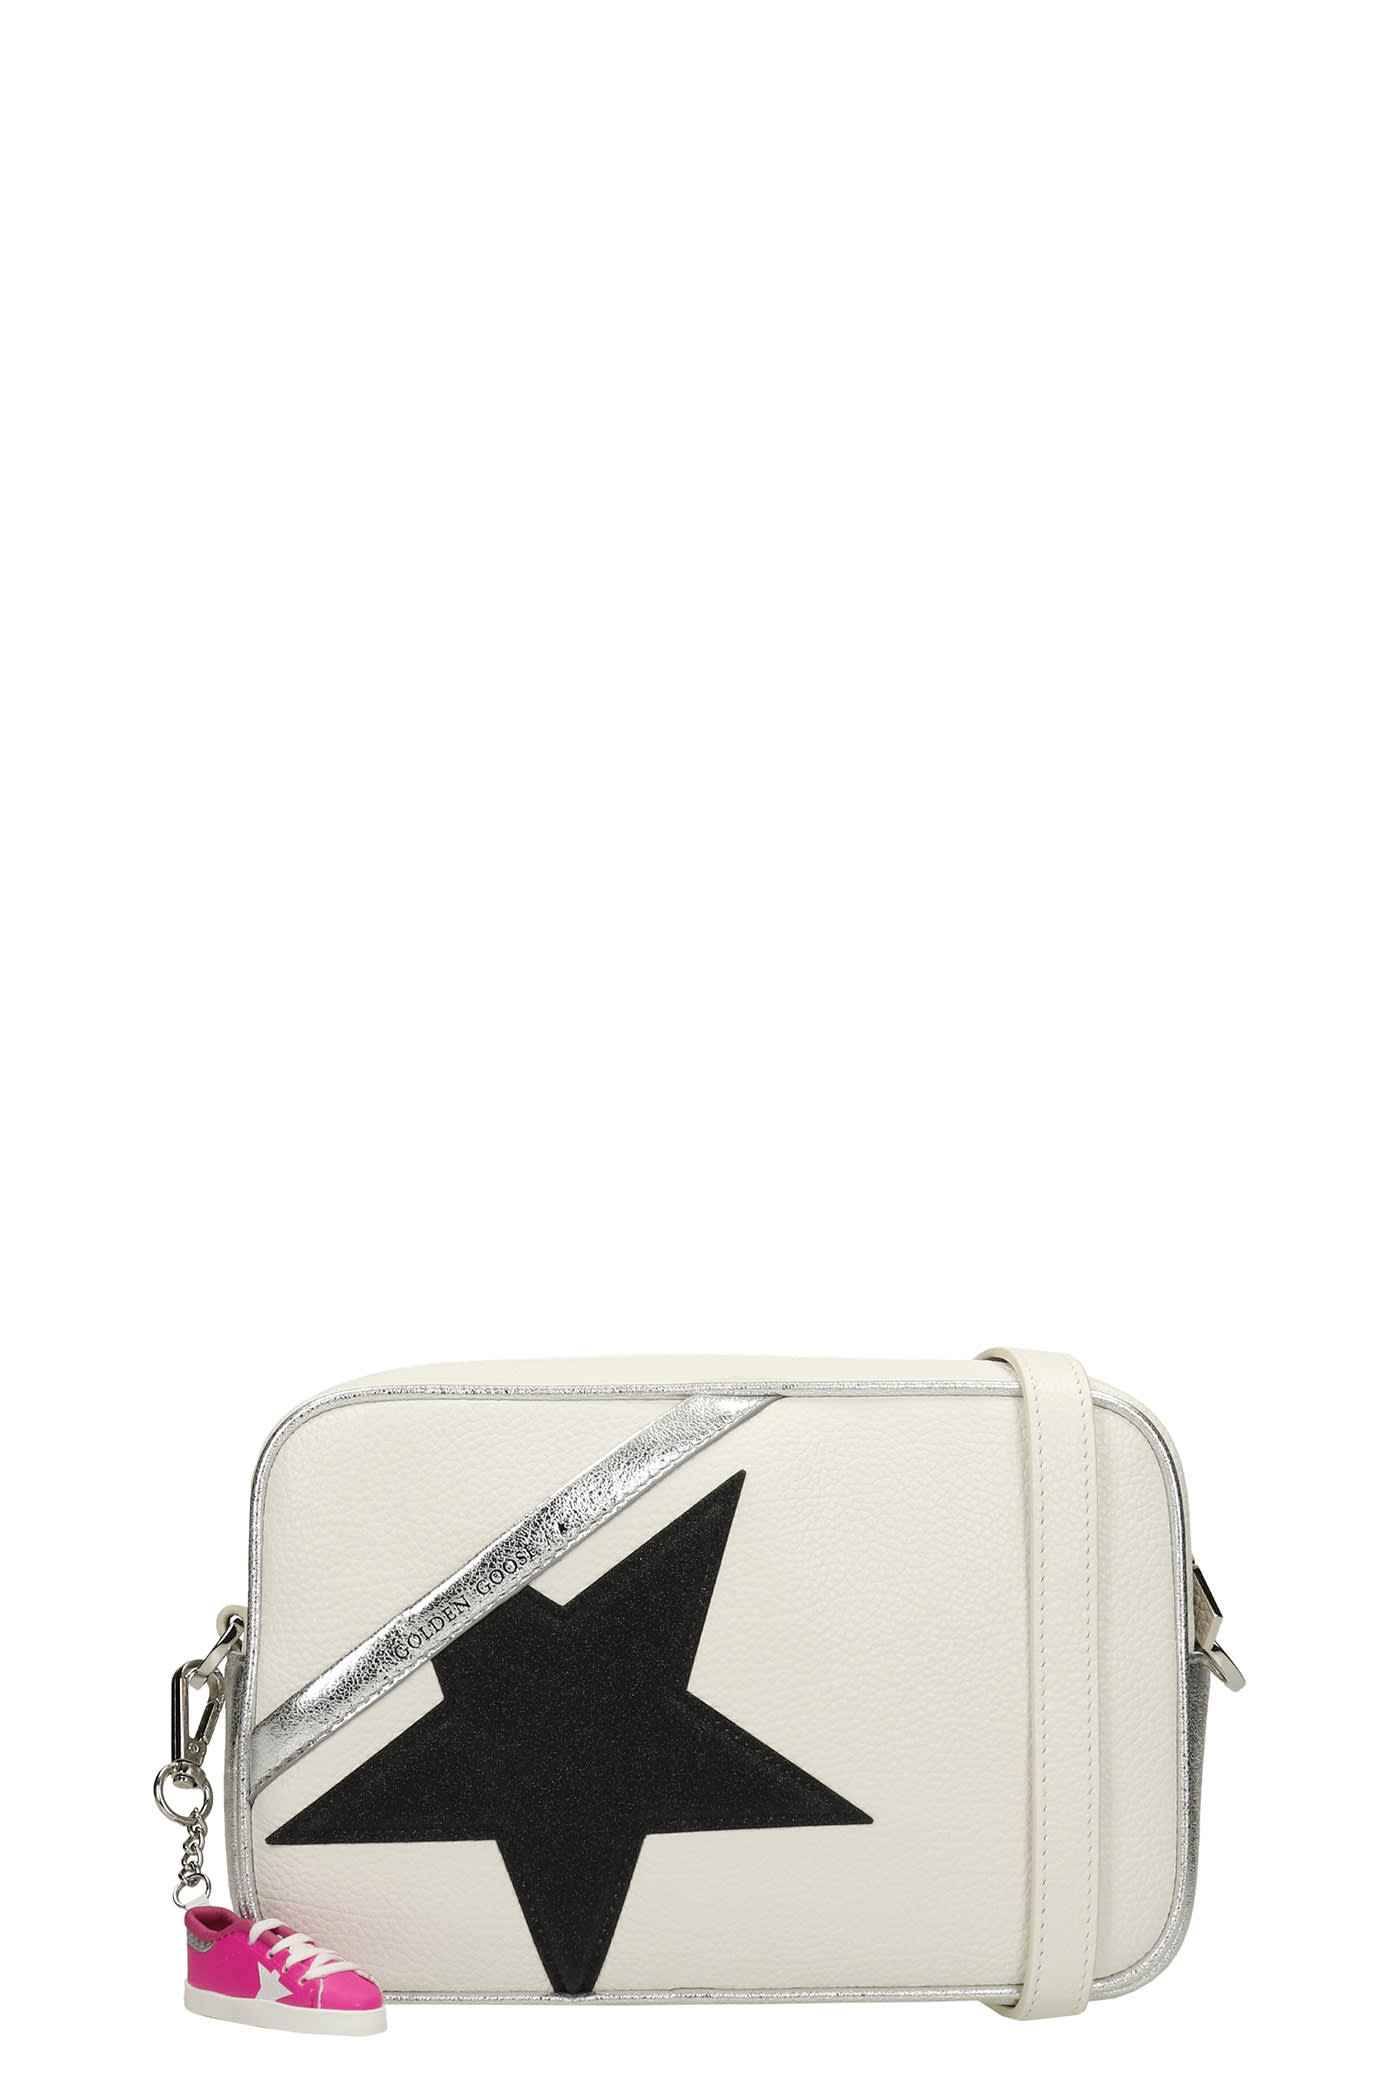 Golden Goose Star Bag Shoulder Bag In White Leather